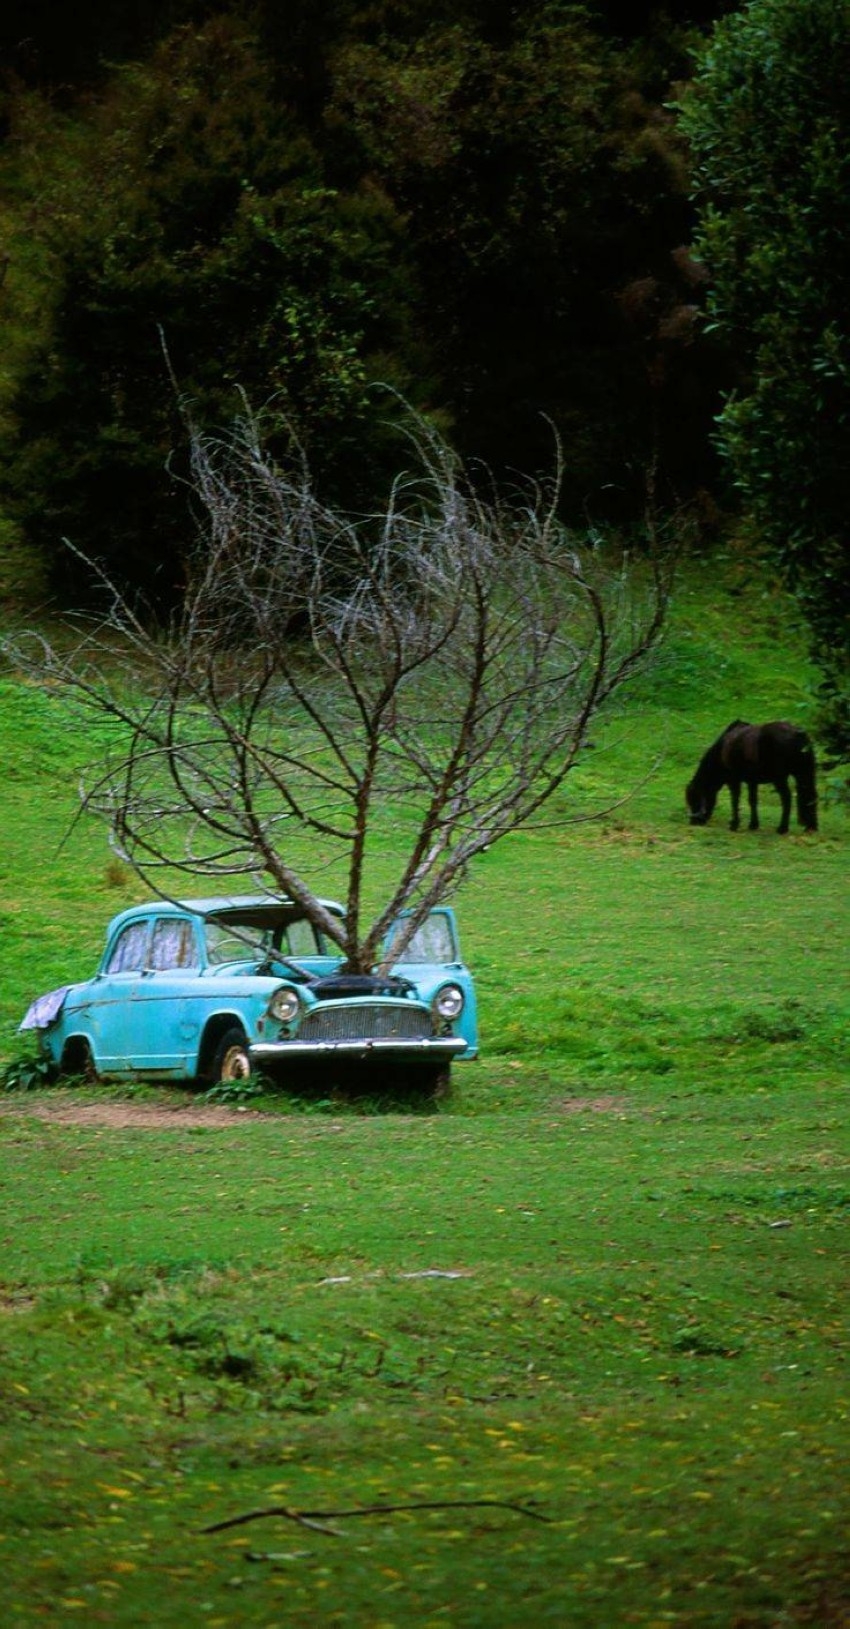 18 لقطة تكشف سيارات مهجورة تنبت أشجاراً